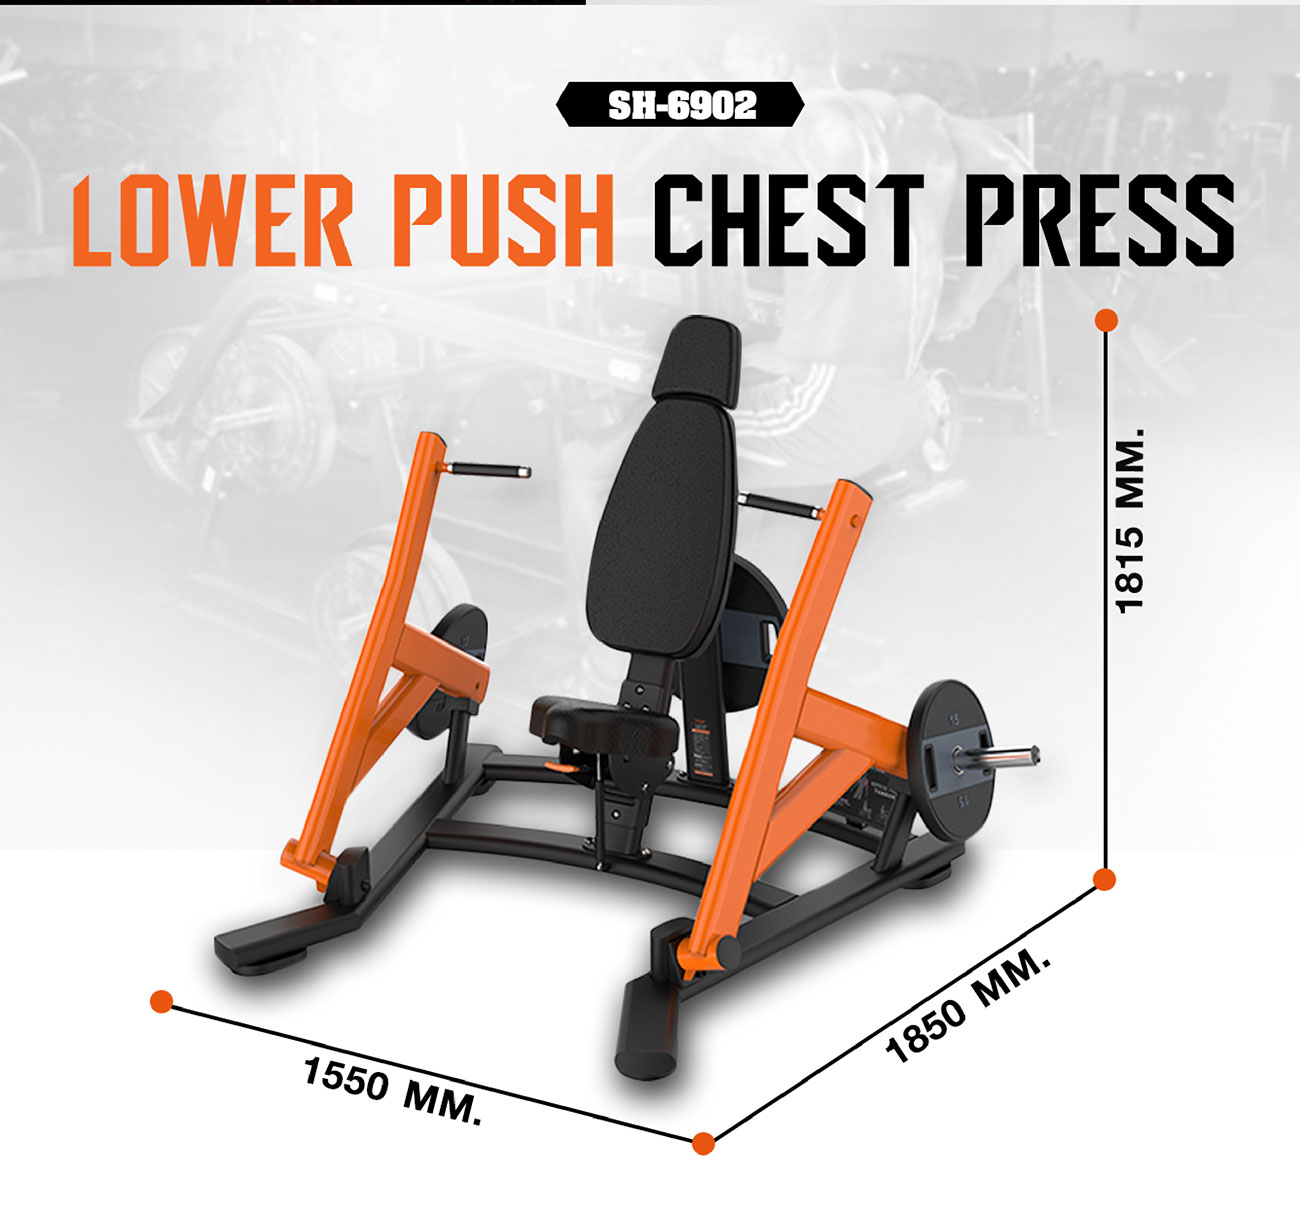 Lower push chest press เครื่องบริหารกล้ามเนื้ออกส่วนกลาง (จับล่าง)SH-6902